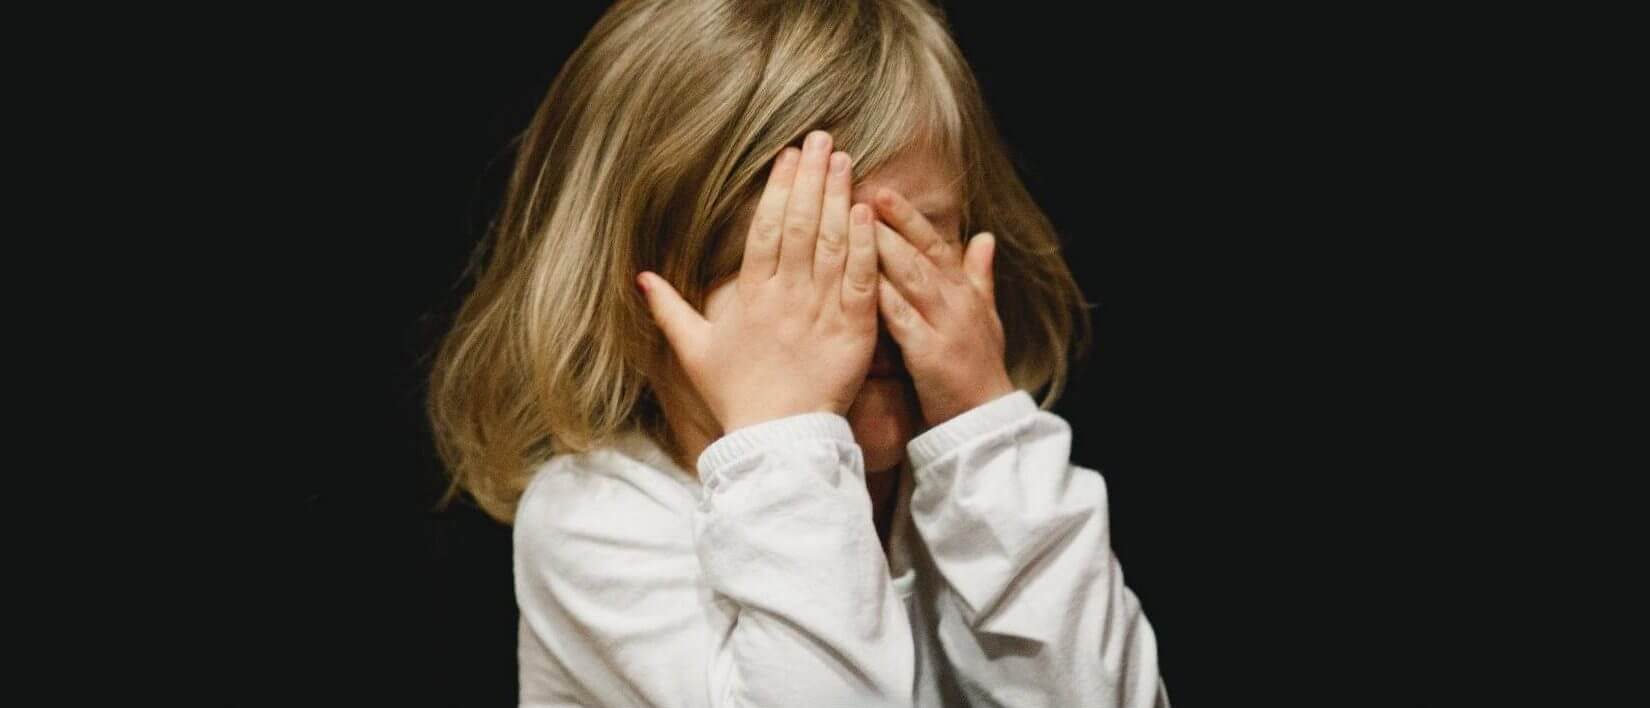 7 τρόποι να αντιμετωπίσεις τις φοβίες του παιδιού σου. Από την ψυχολόγο Έλλη Στάβερη